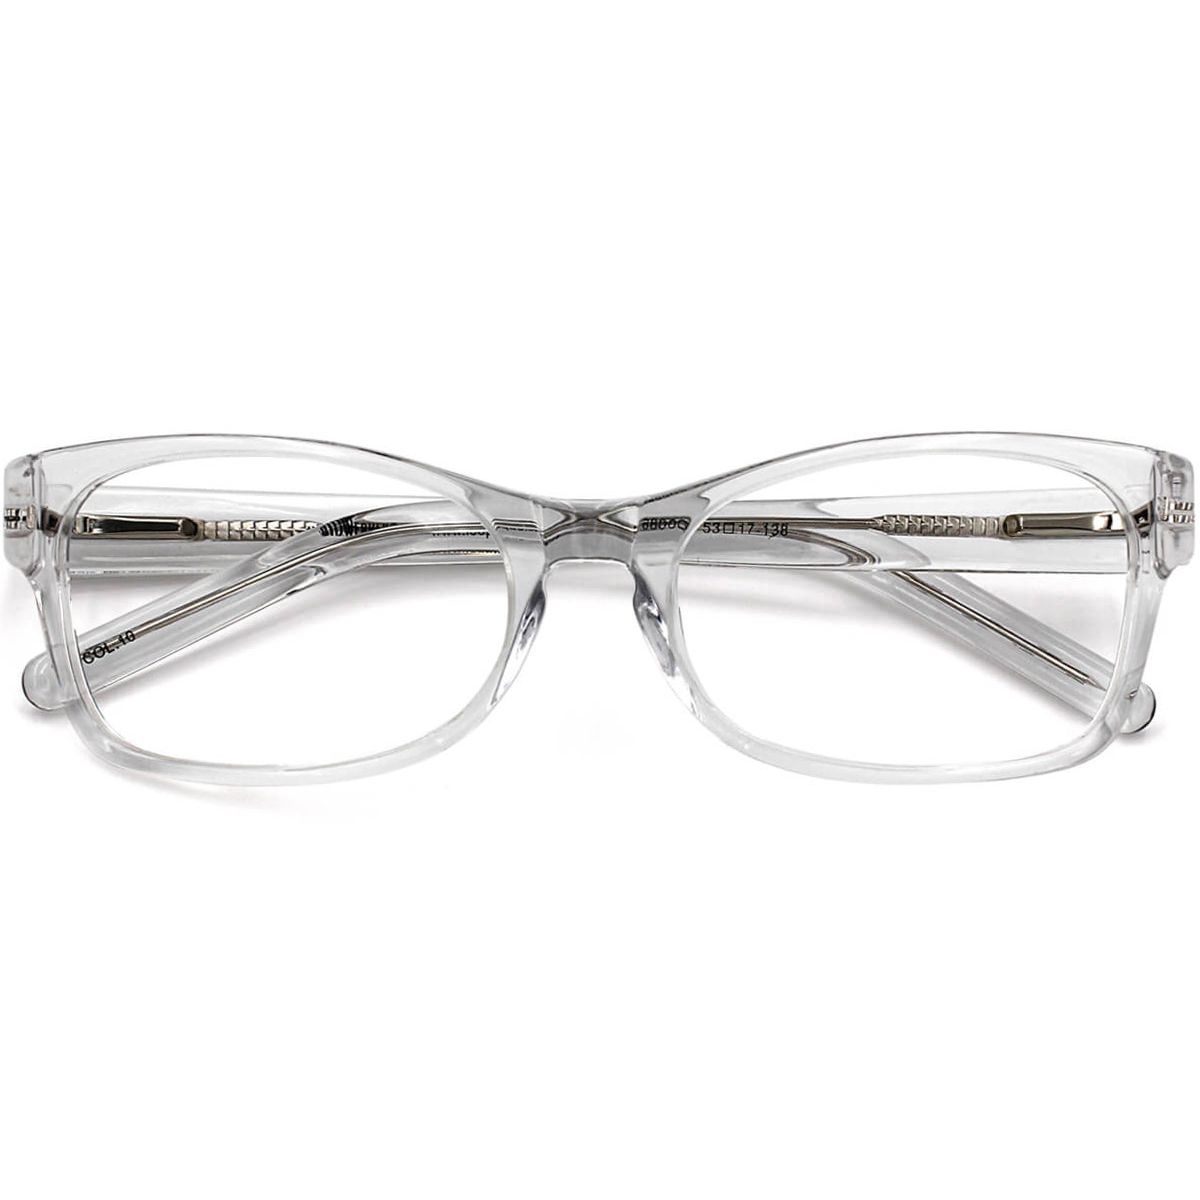 SPR-660002 Rectangle Clear Eyeglasses Frames | Leoptique